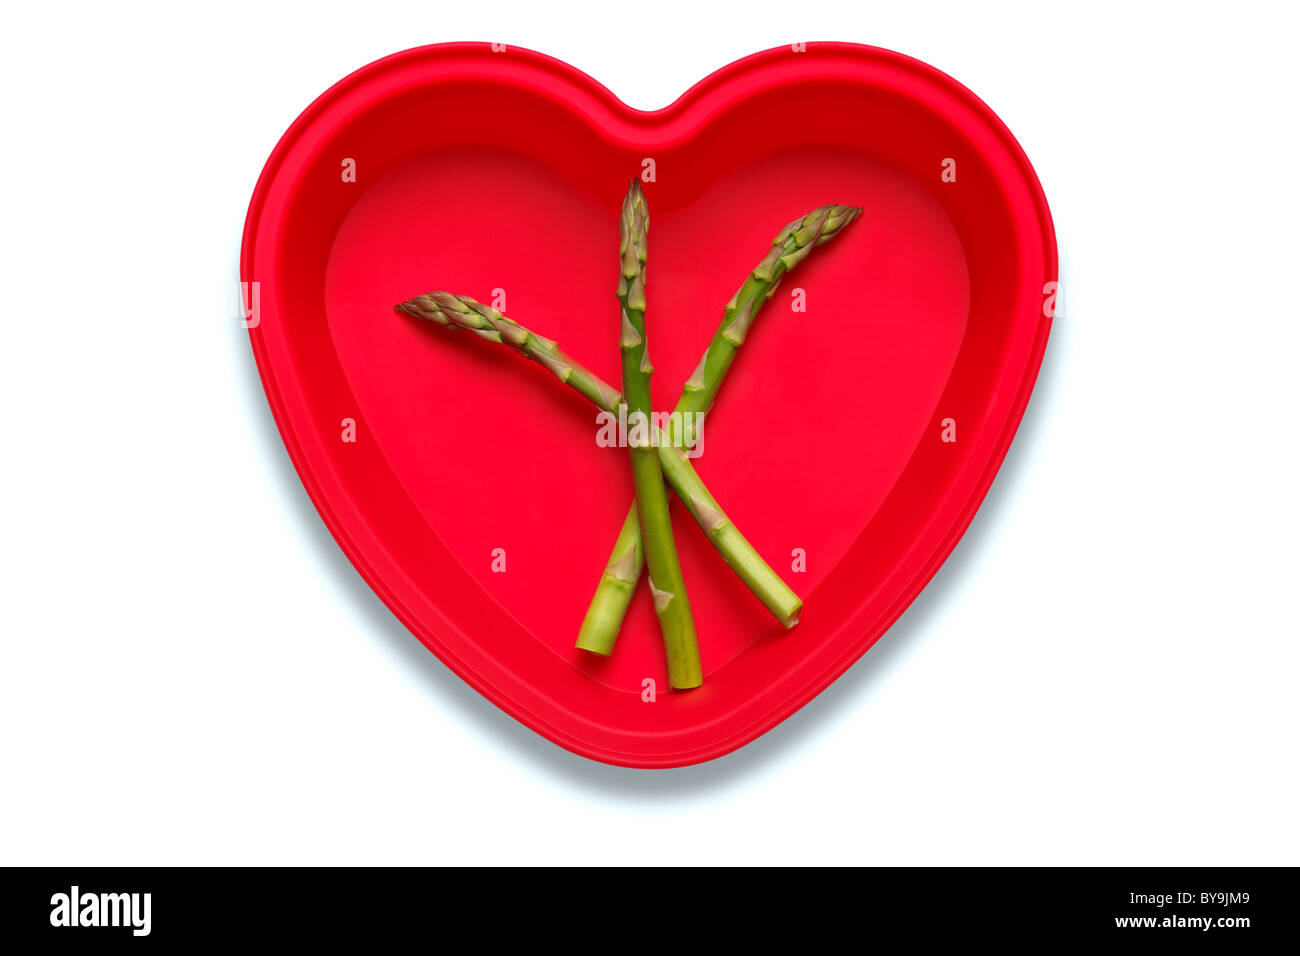 Foto concettuale di asparagi in un cuore piatto sagomato per rappresentare un amore del vegetale, isolato su sfondo bianco Foto Stock